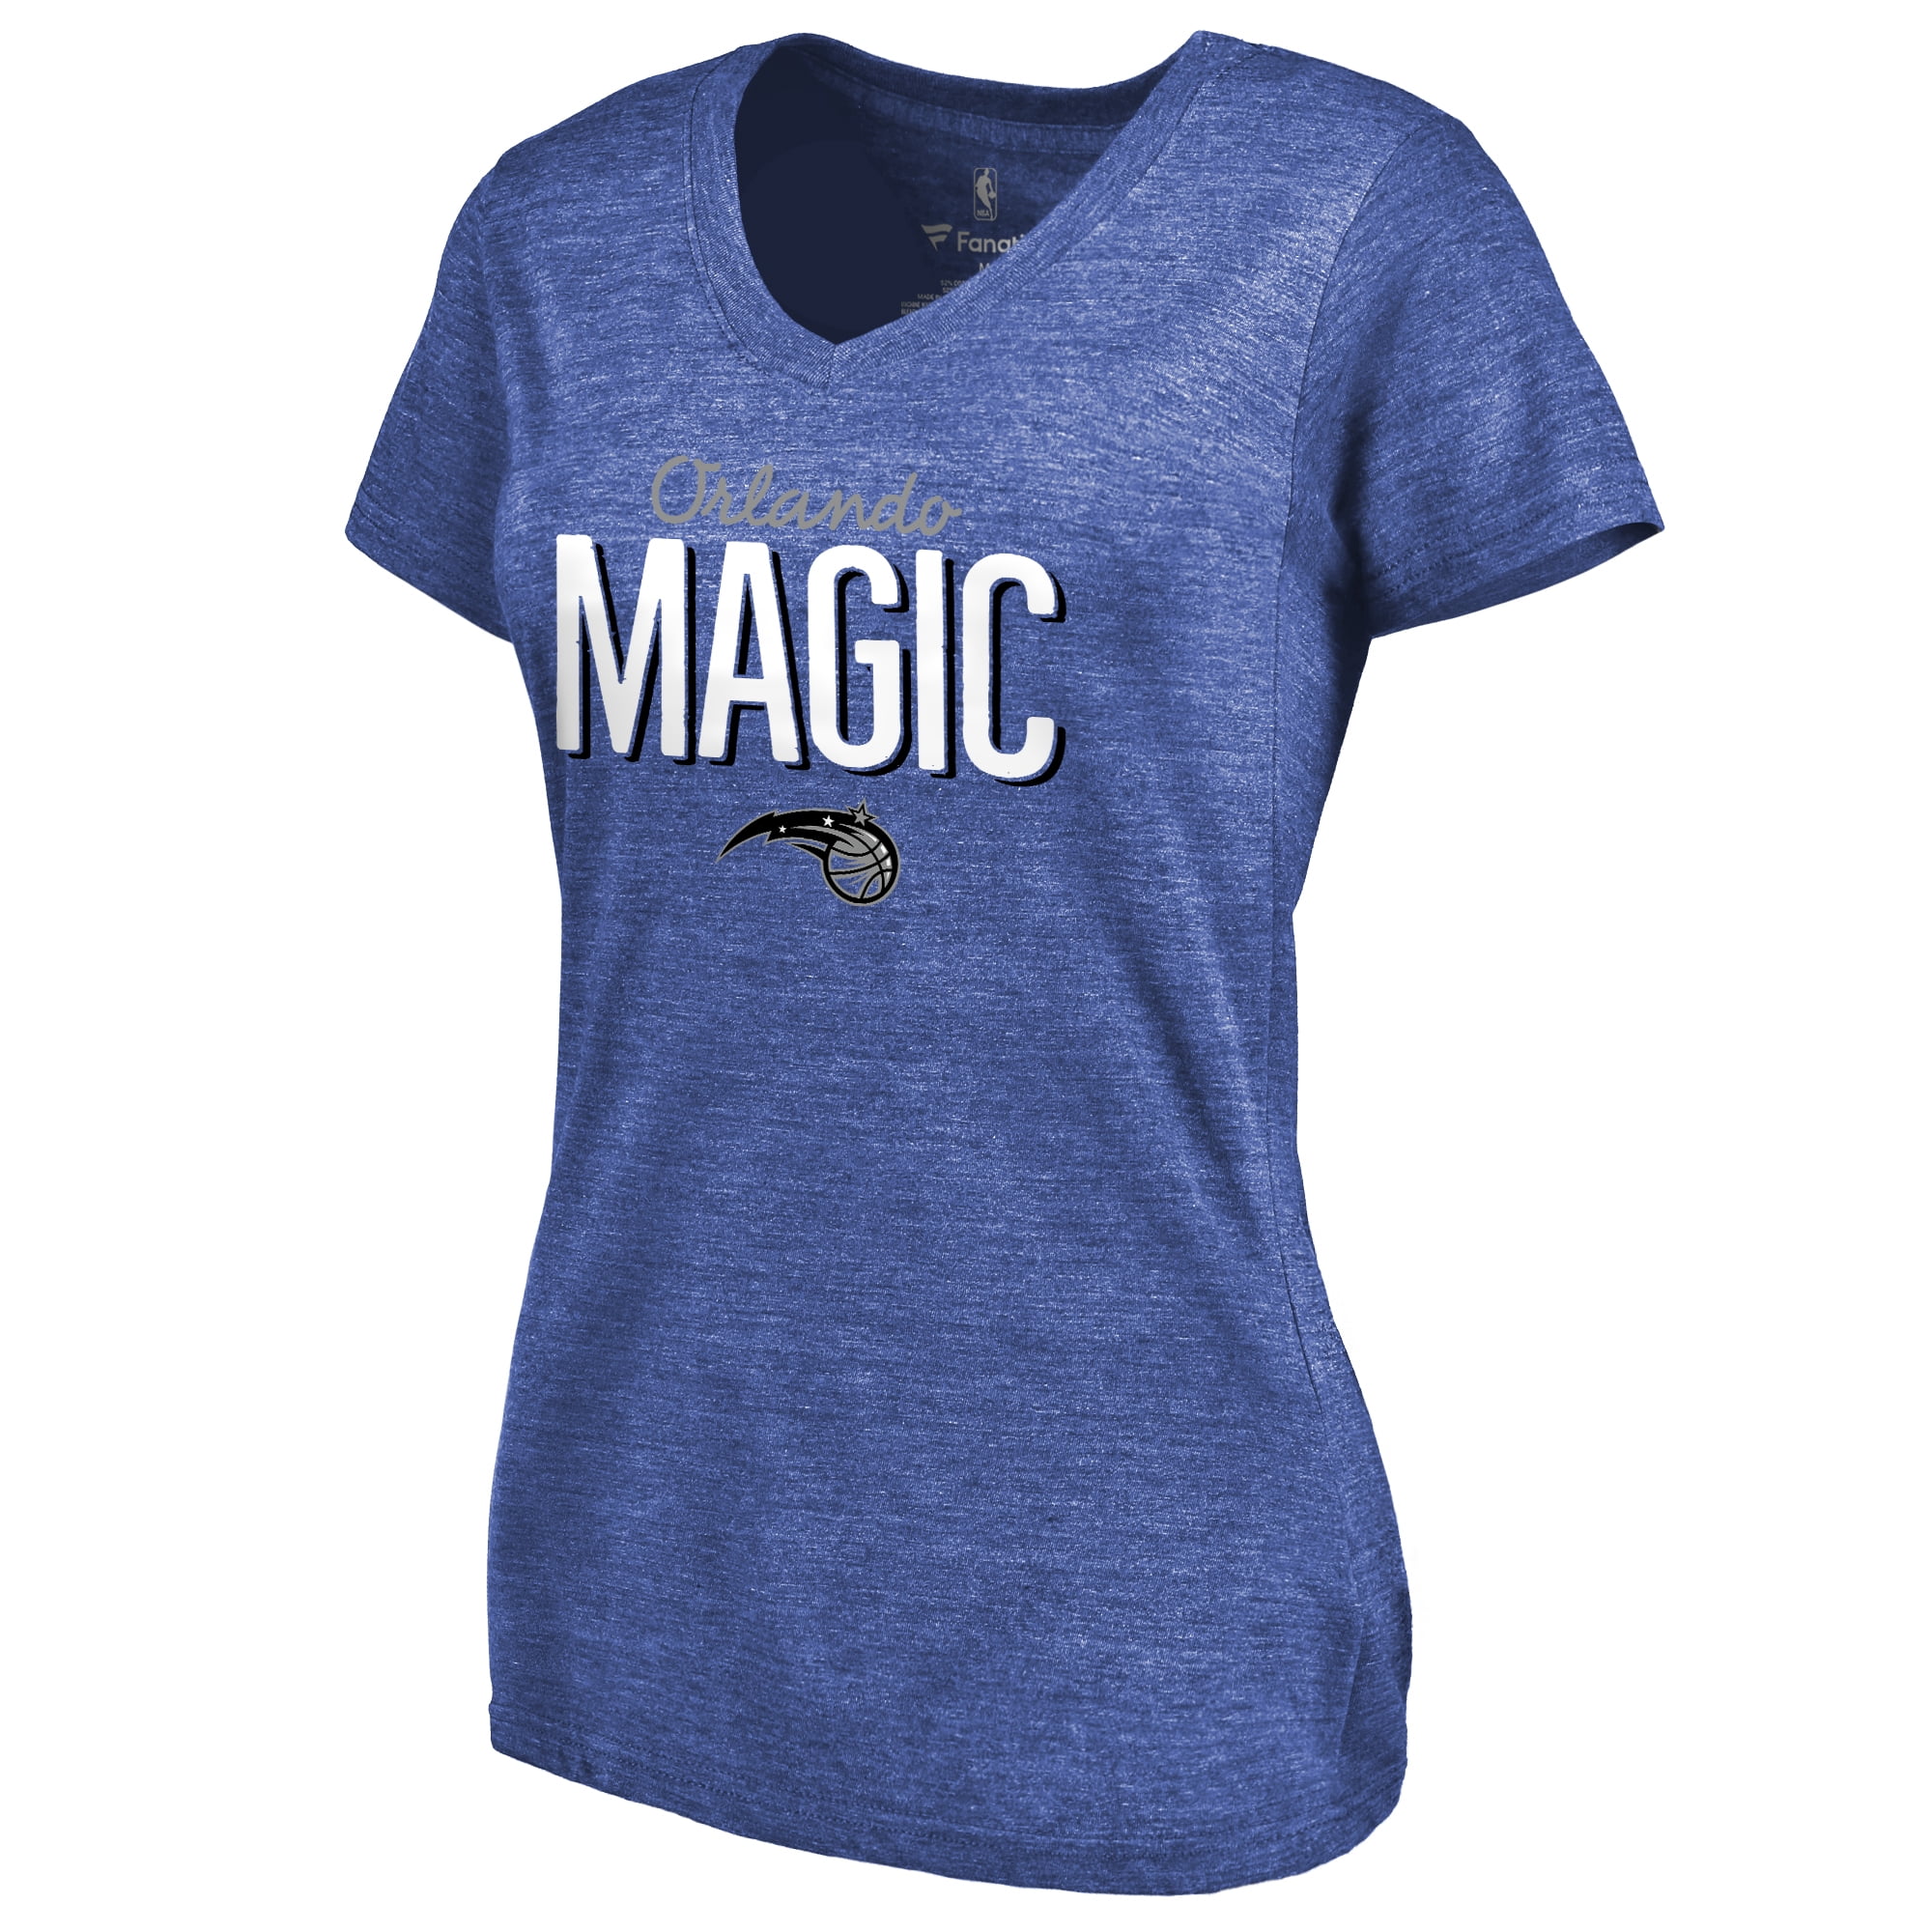 orlando magic women's shirt